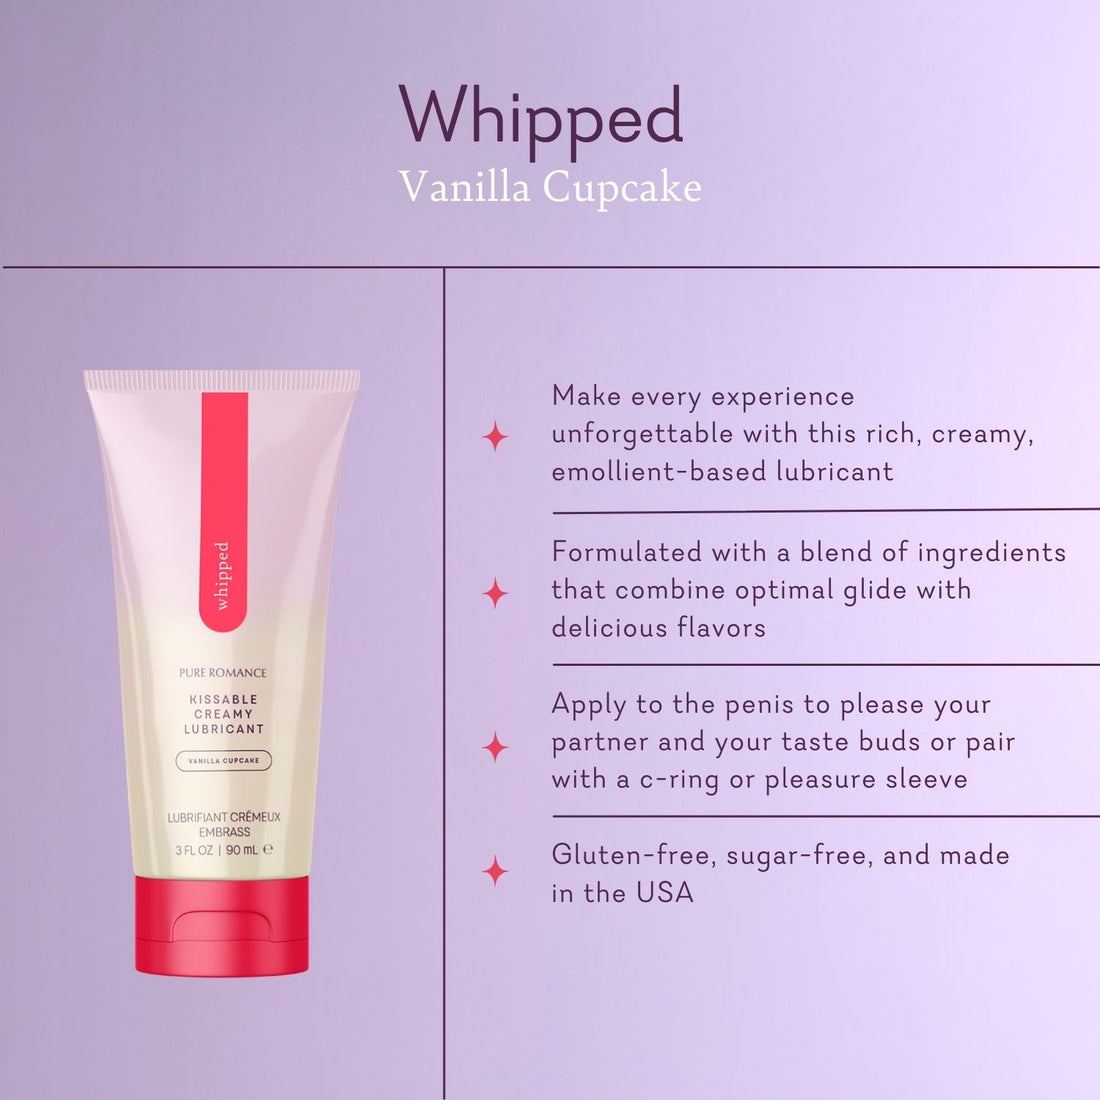 Whipped Vanilla Cupcake